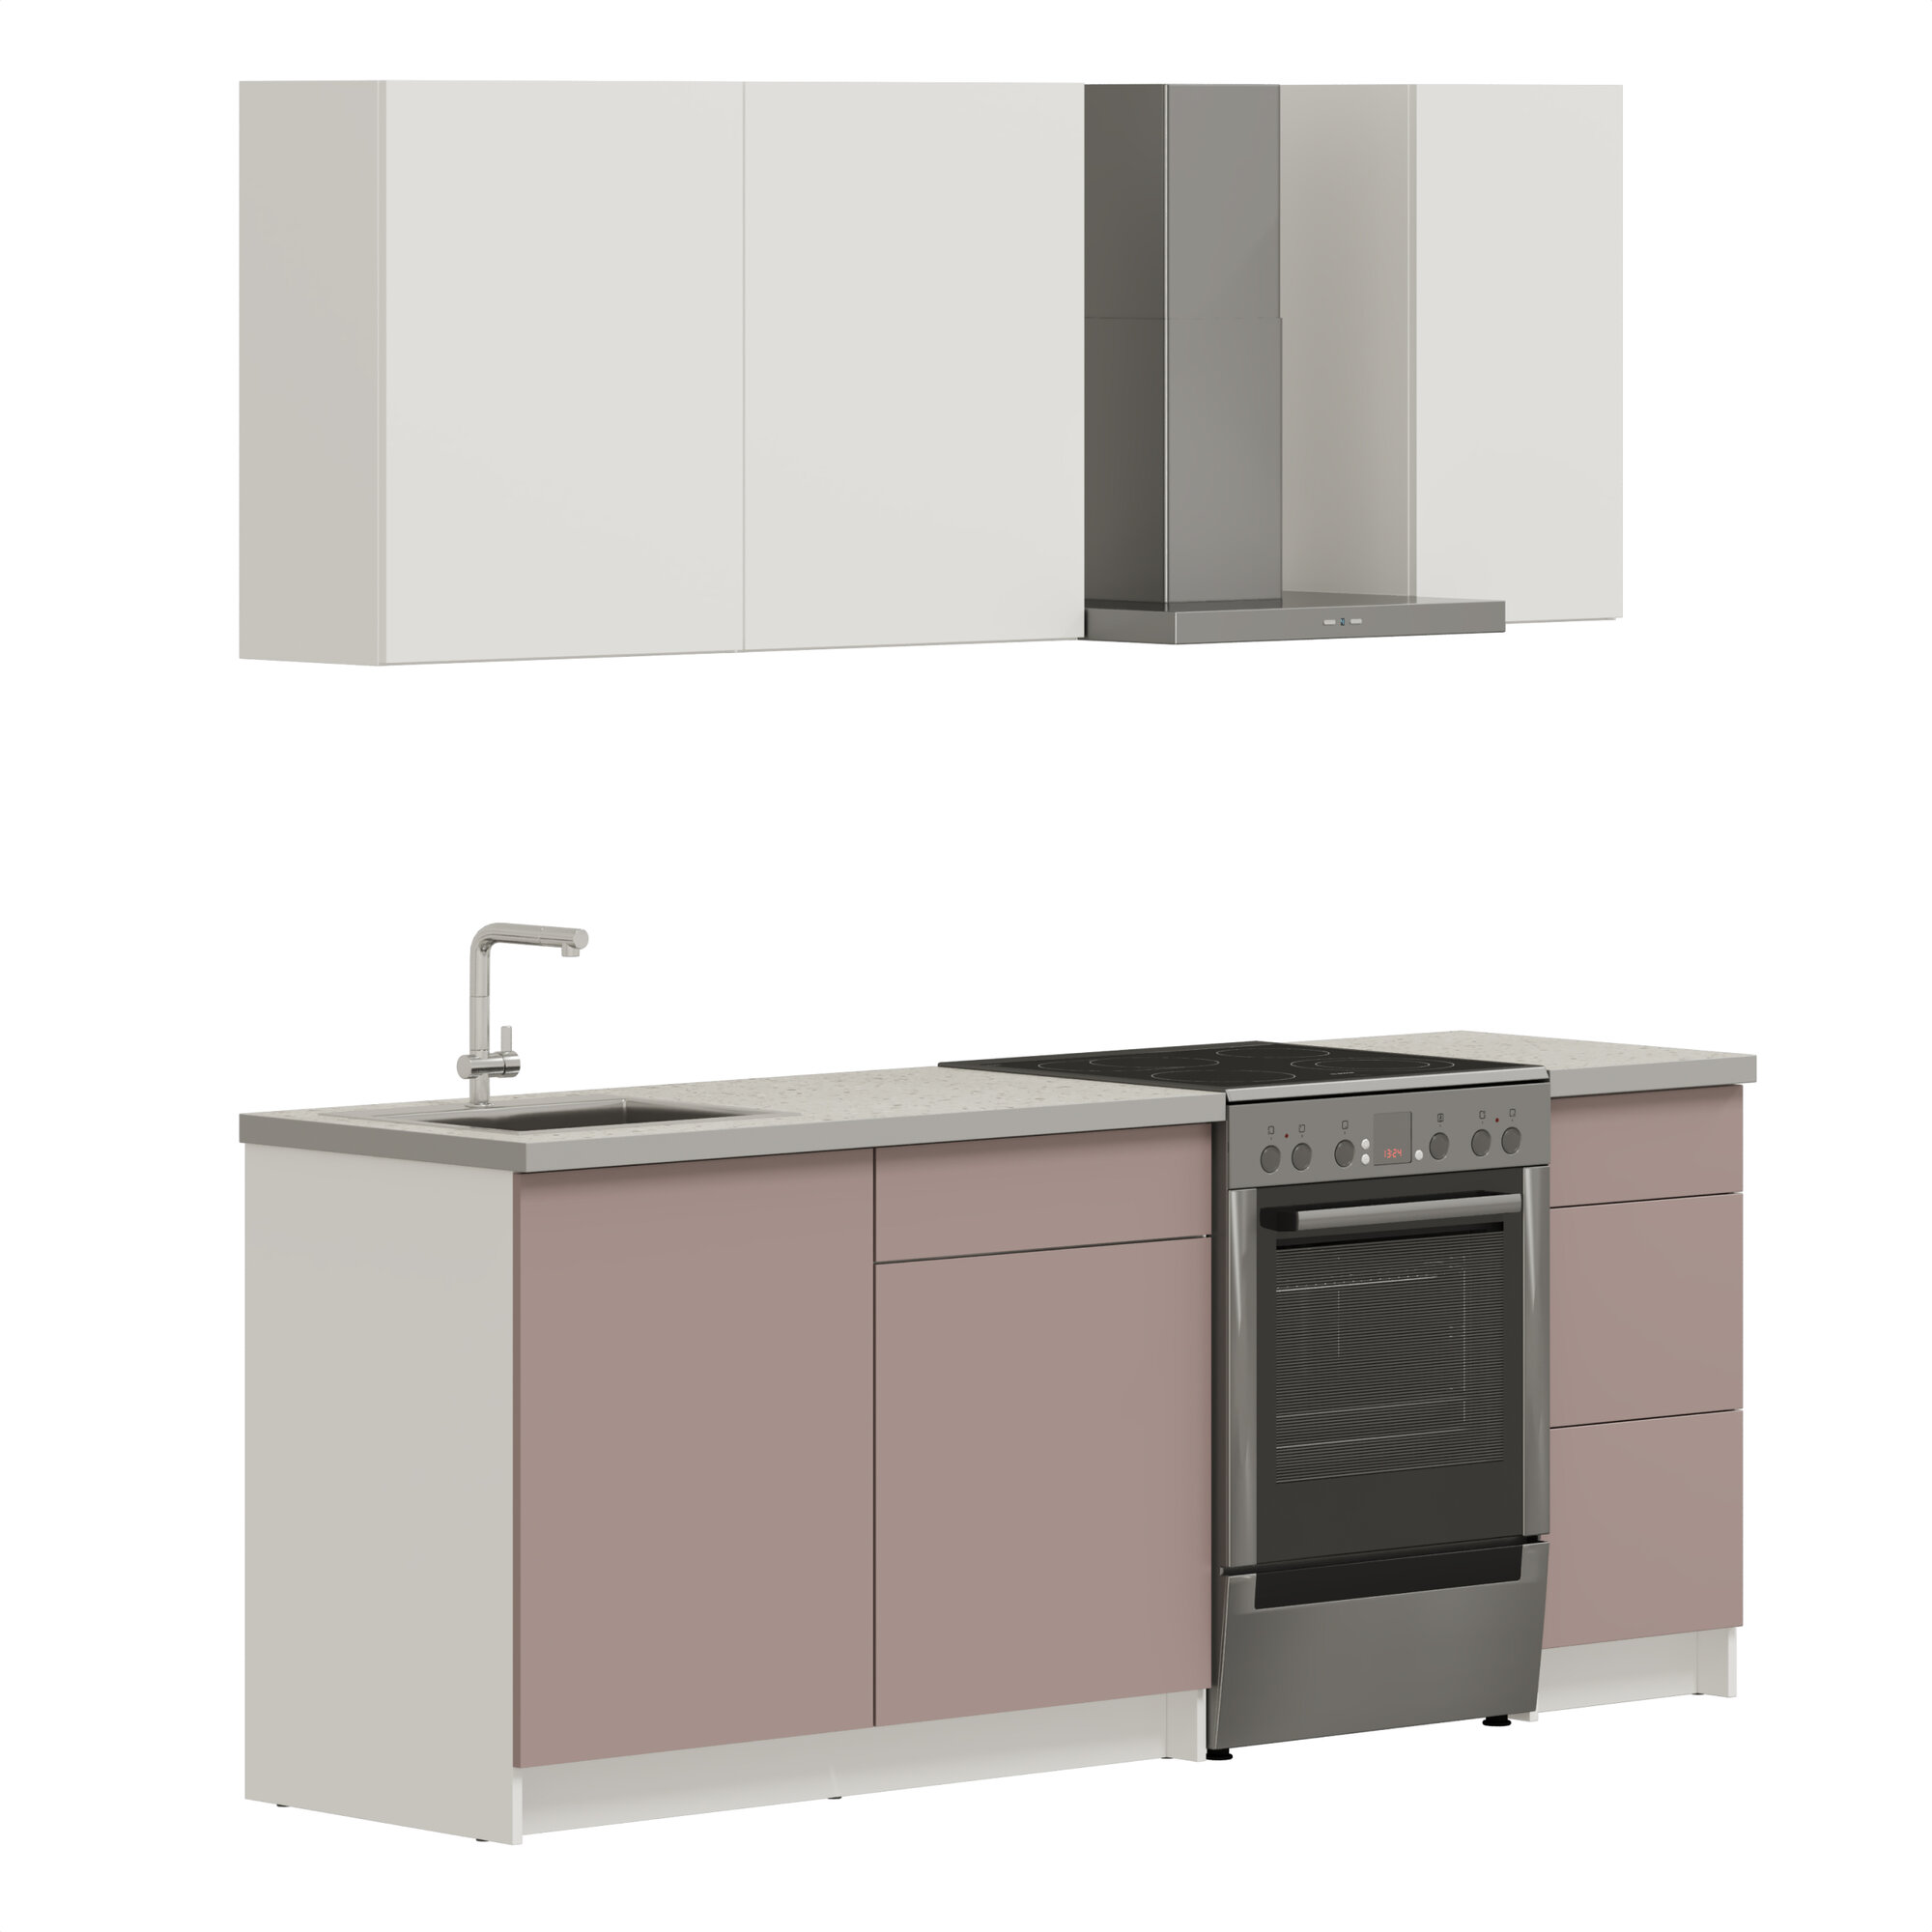 Кухонный гарнитур, кухня прямая Pragma Elinda 162 см (1,62 м), со столешницей, ЛДСП, пыльный розовый/белый